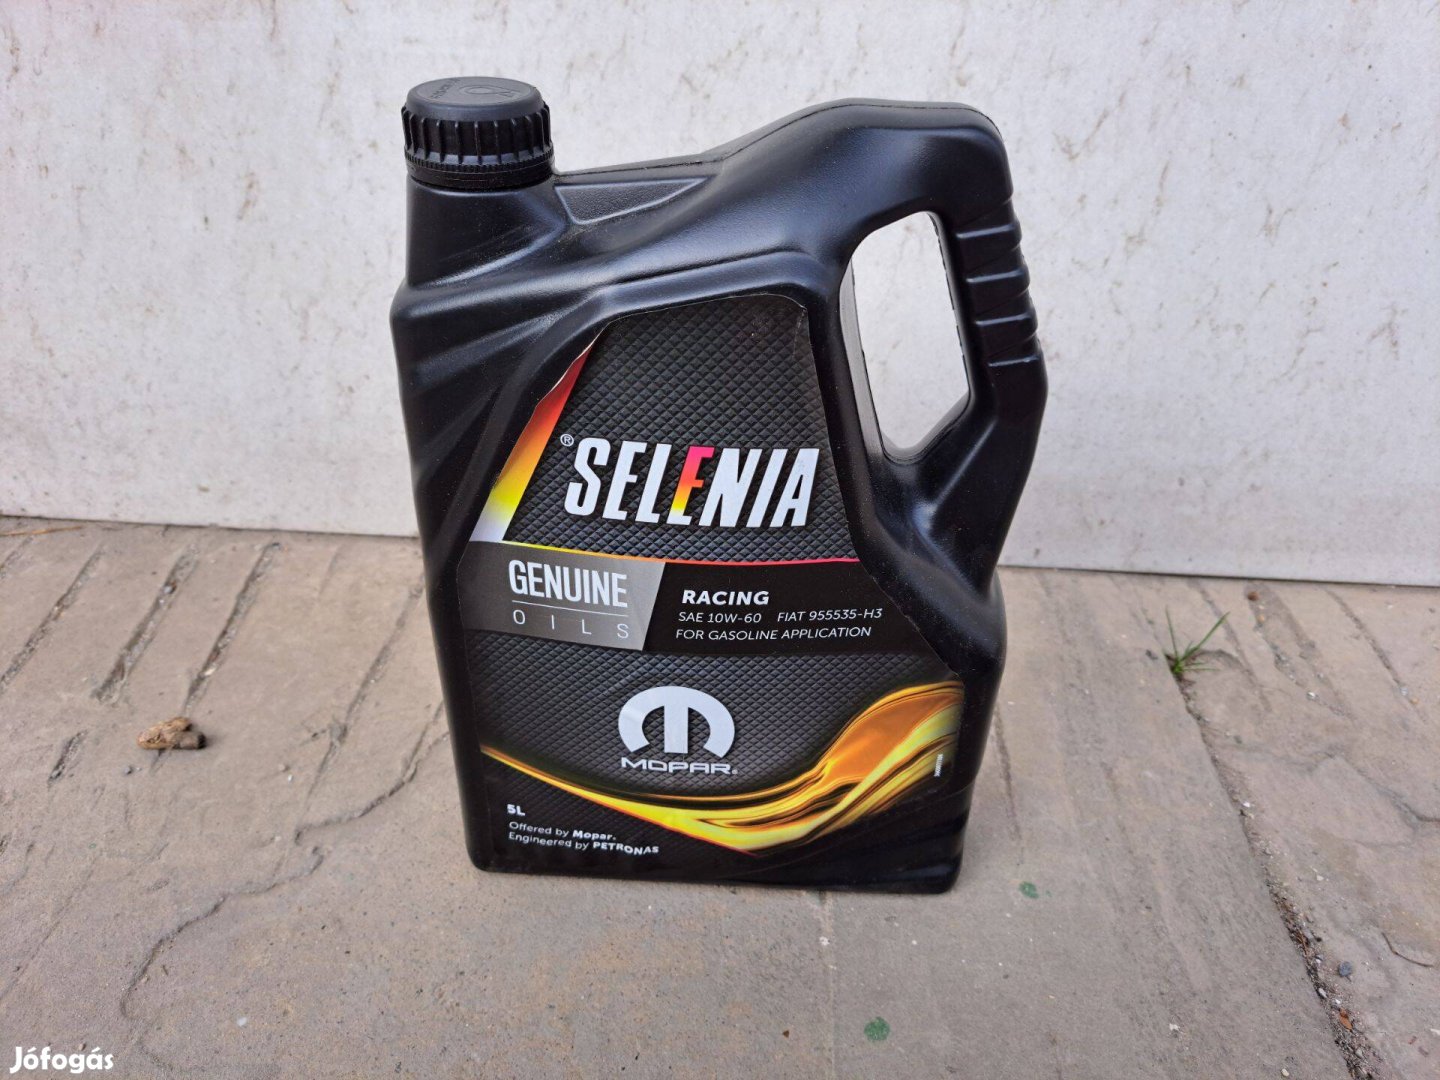 Selenia Racing 10W-60 Rally / Verseny Motorolaj 5L eladó!!! akciós ár